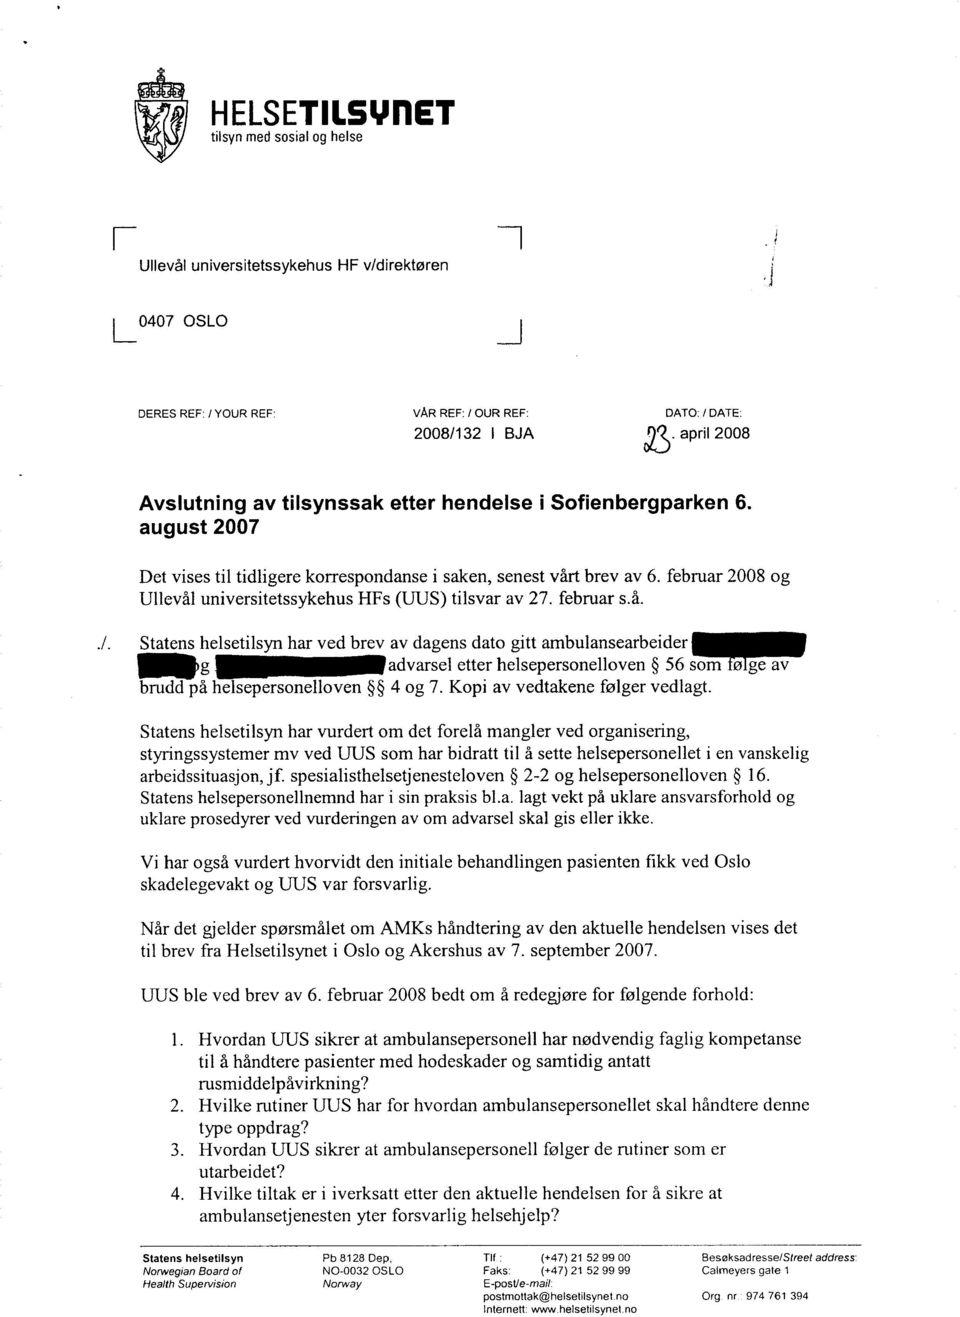 august 2007 Det vises til tidligere korrespondanse i saken, senest vårt brev av 6. februar 2008 og Ullevål universitetssykehus HFs (UUS) tilsvar av 27. februar s.å../.